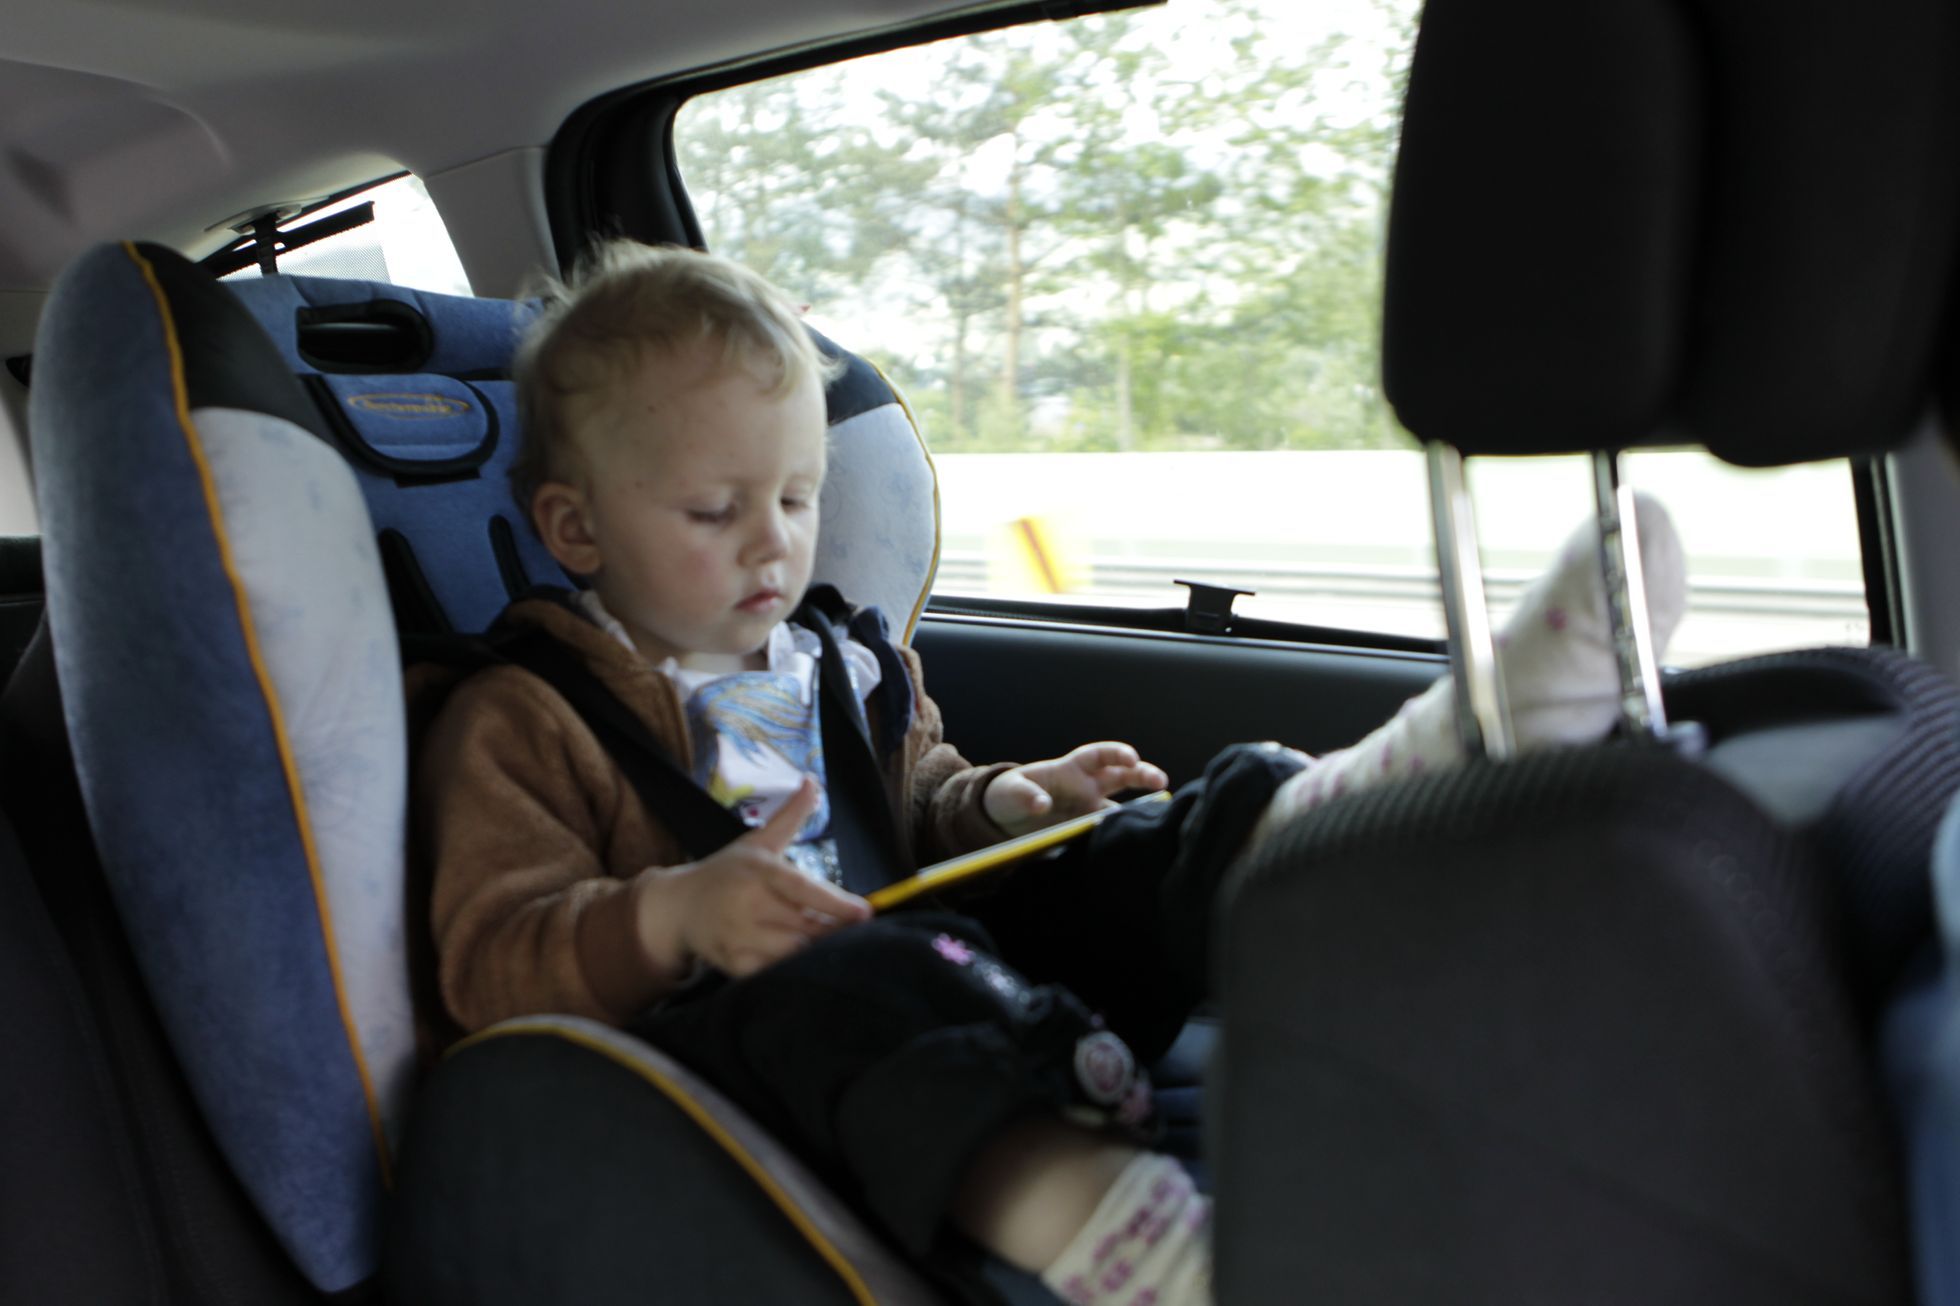 L’Italia introduce gli allarmi automobilistici obbligatori per i conducenti con bambini